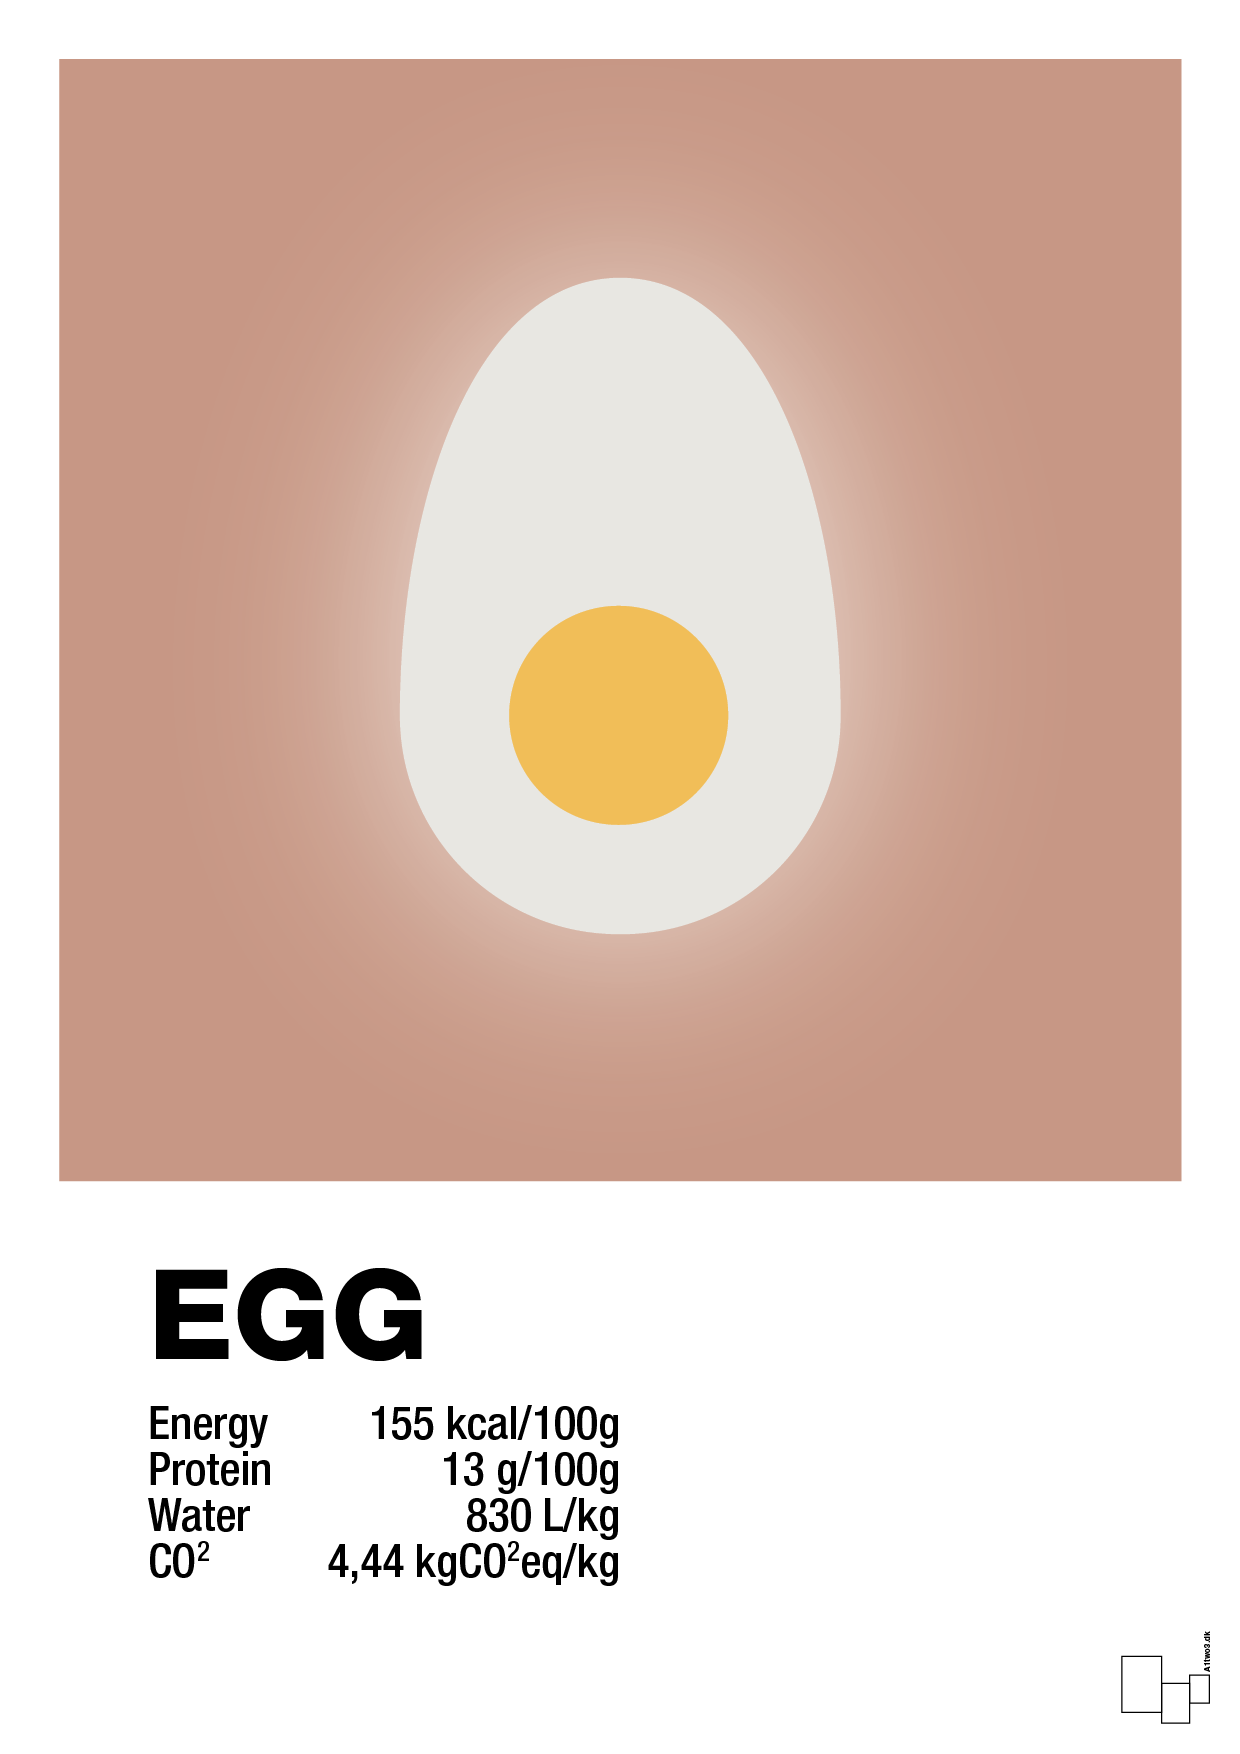 egg nutrition og miljø - Plakat med Mad & Drikke i Powder